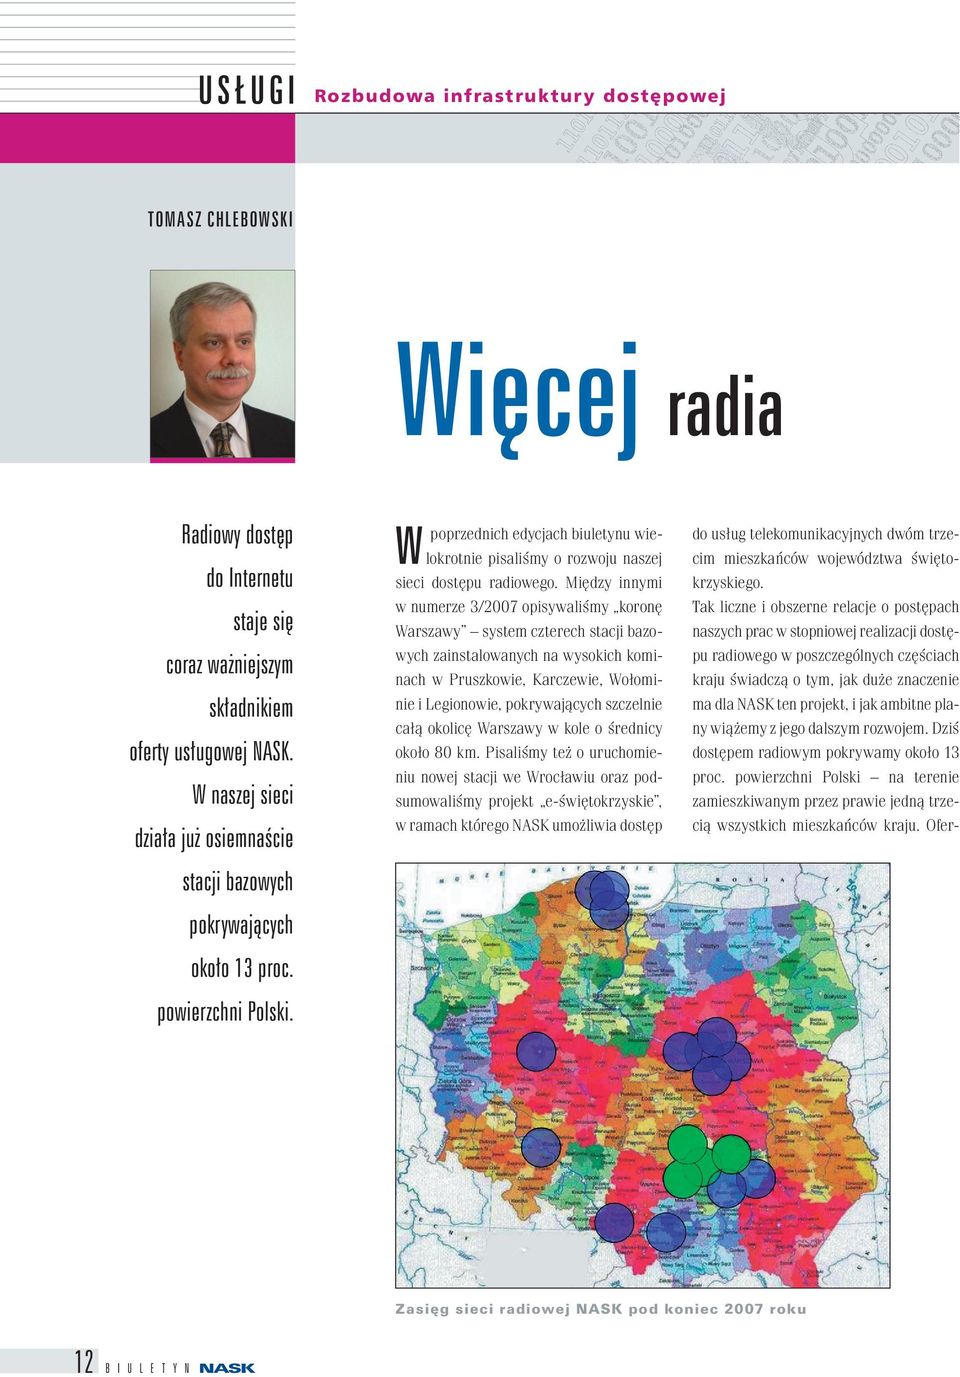 Między innymi w numerze 3/2007 opisywaliśmy koronę Warszawy system czterech stacji bazowych zainstalowanych na wysokich kominach w Pruszkowie, Karczewie, Wołominie i Legionowie, pokrywających